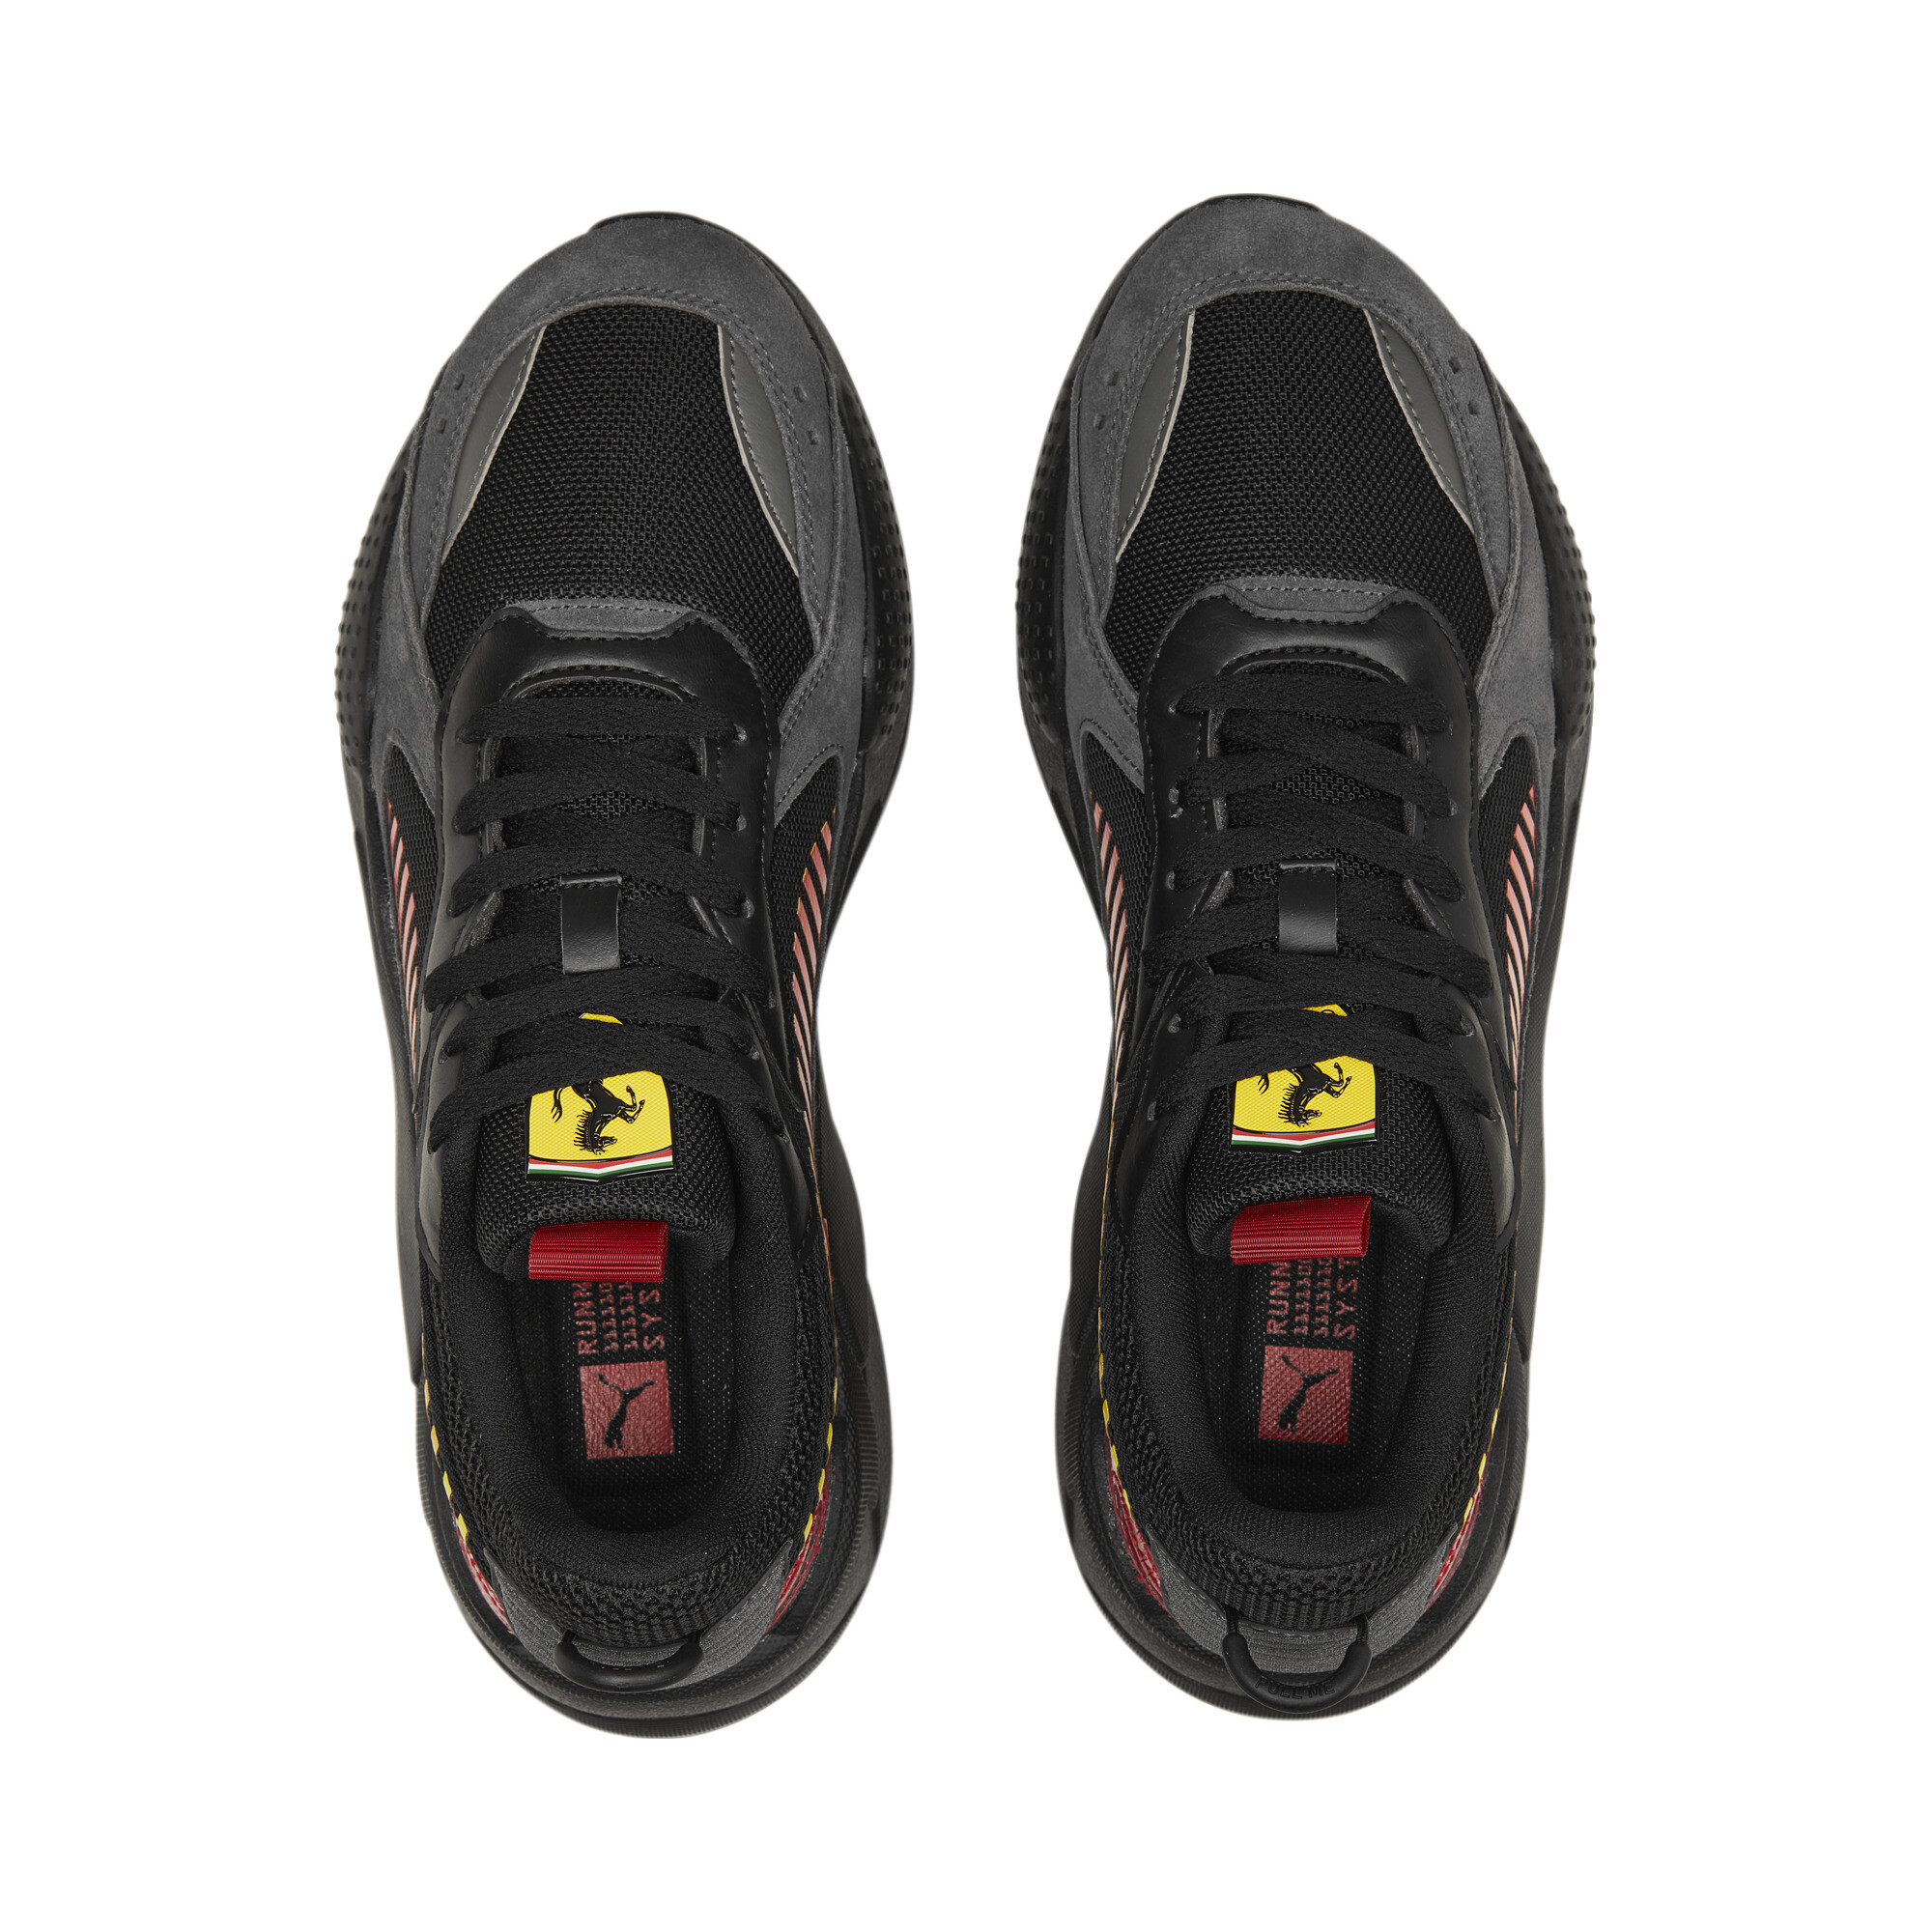 Men's PUMA Scuderia Ferrari RS-X Motorsport Shoes In Red, Size EU 47